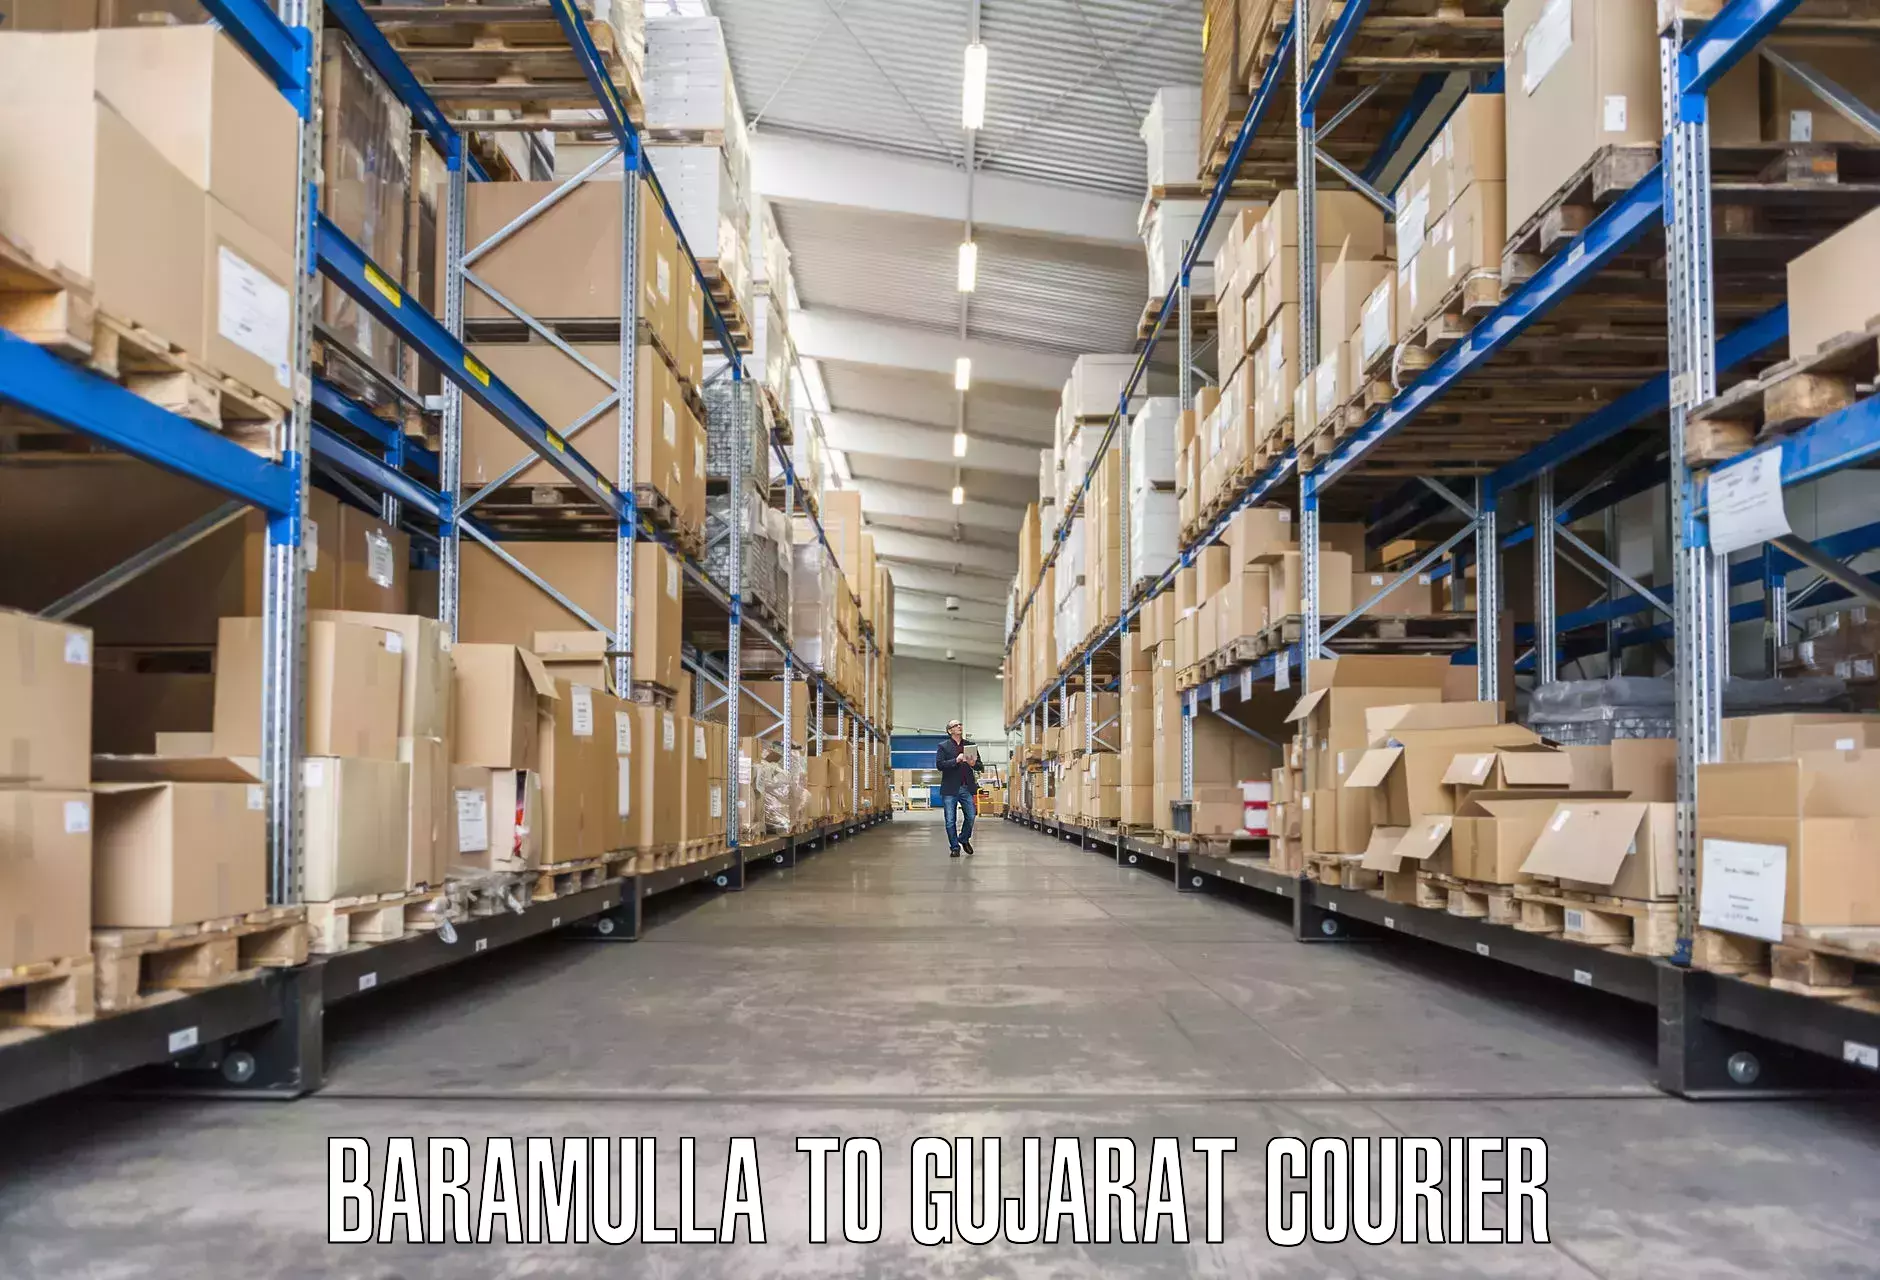 Furniture transport experts Baramulla to Patan Gujarat